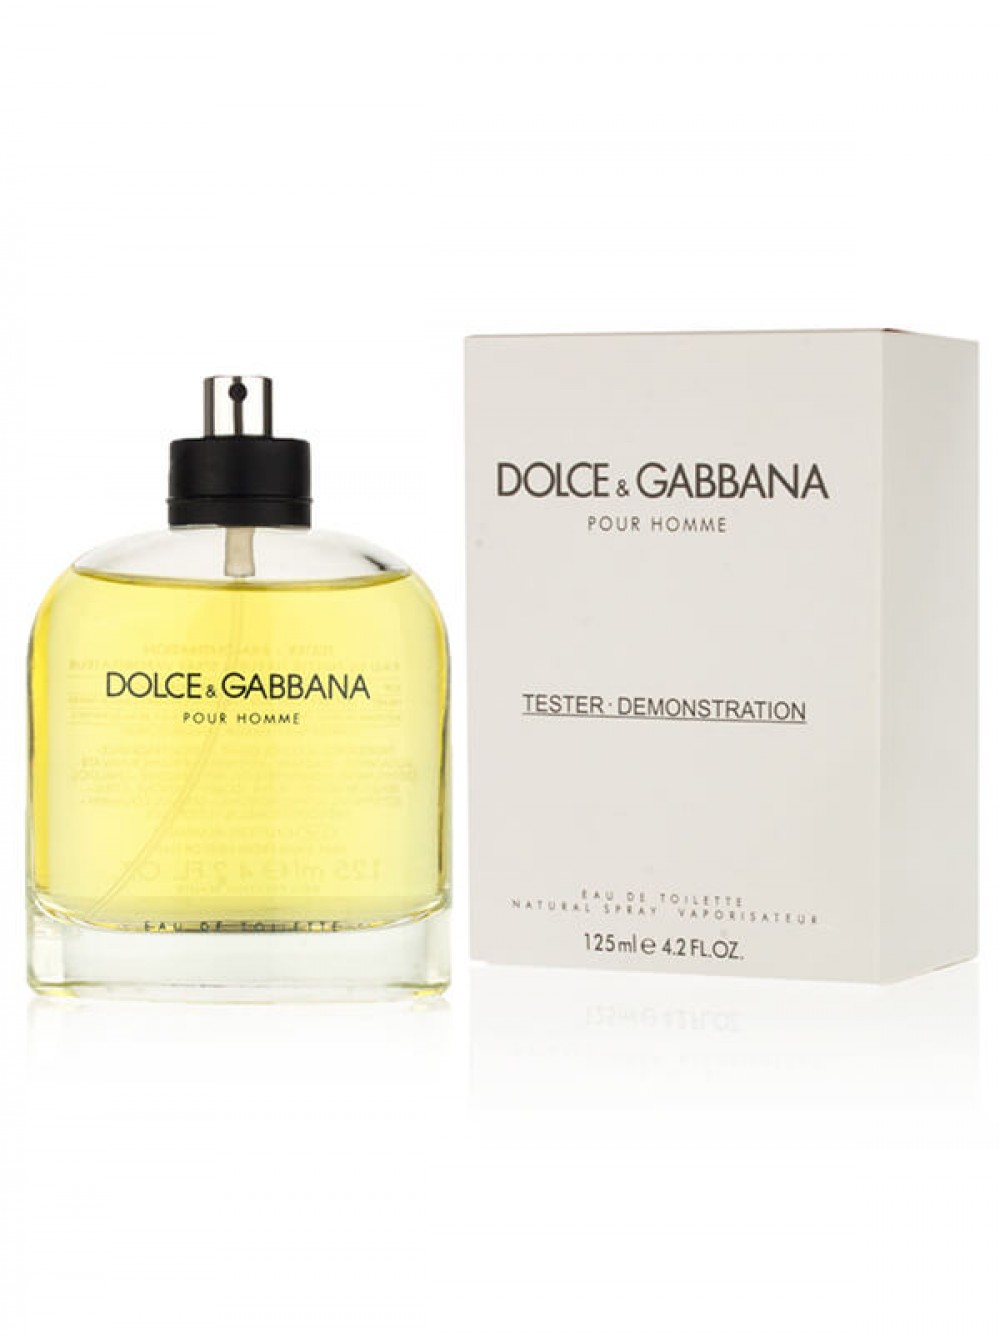 Дольче габбана пур хом. Dolce&Gabbana, тестер, EDT, 100 ml,. Tester Dolce & Gabbana pour homme EDT 125 ml. Dolce Gabbana 125ml pour homme. Dolce Gabbana pour homme 125.